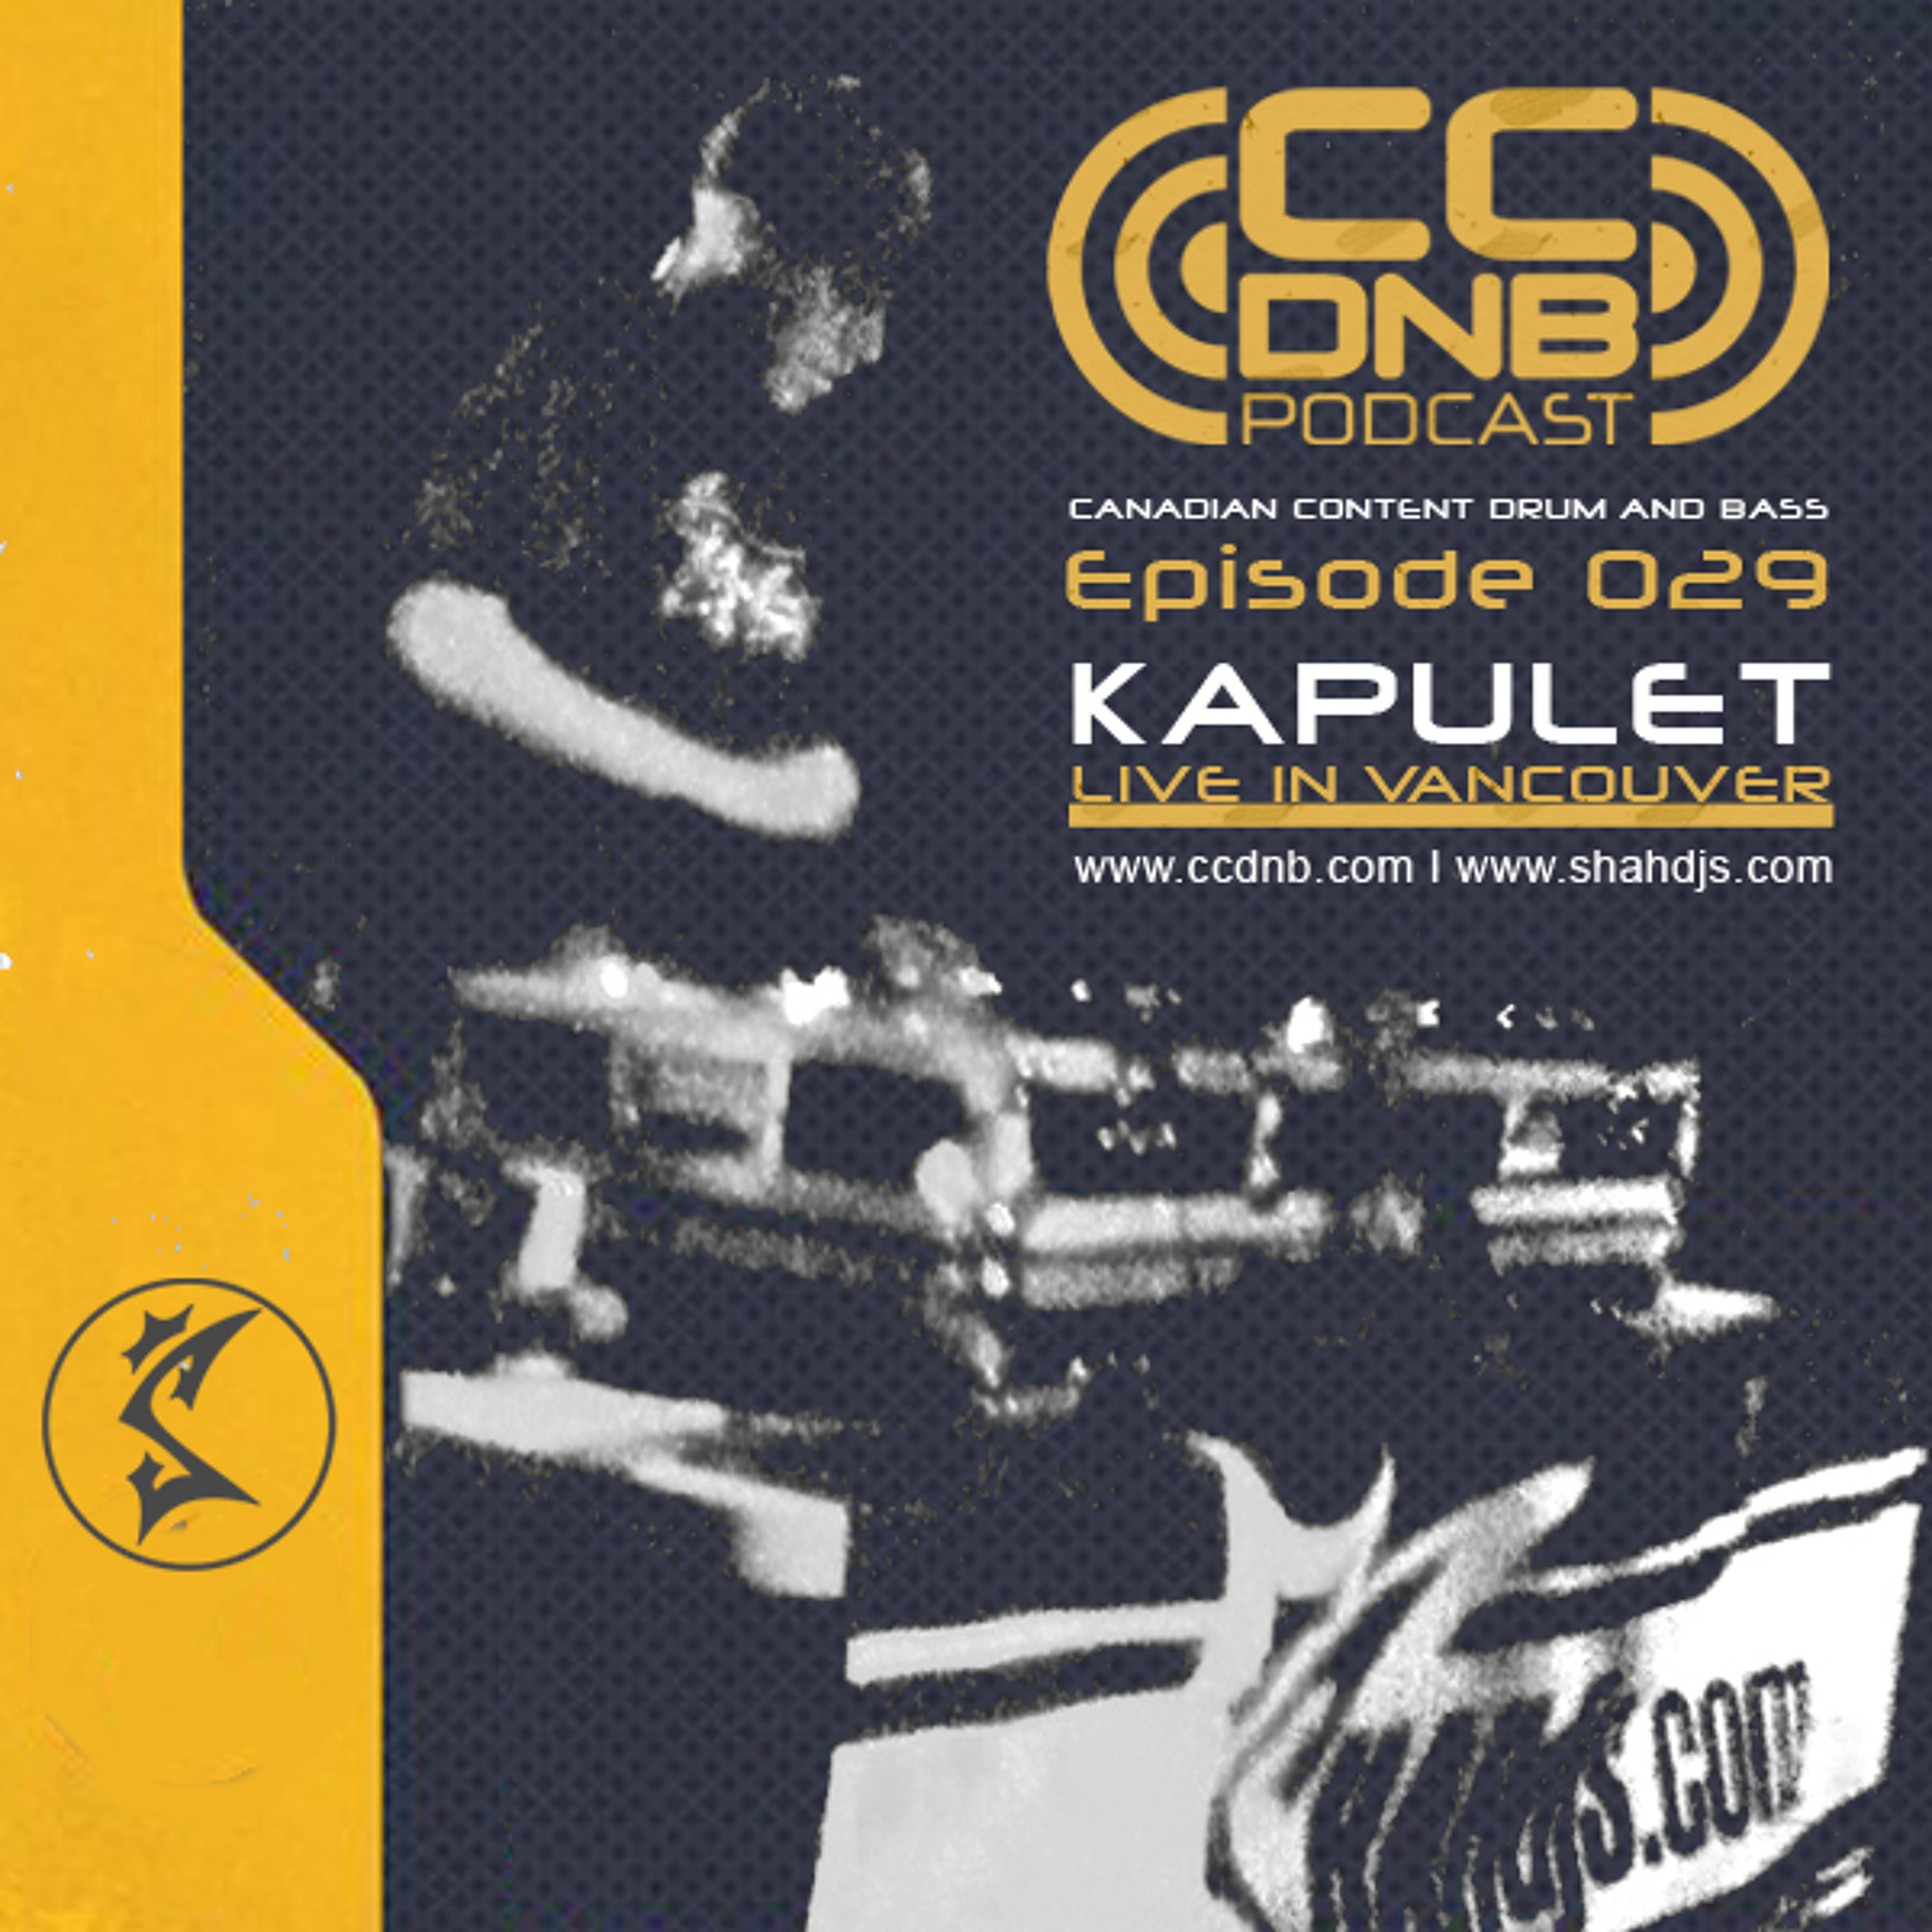 CCDNB 029 Kapulet Live in Vancouver 08/14/2010